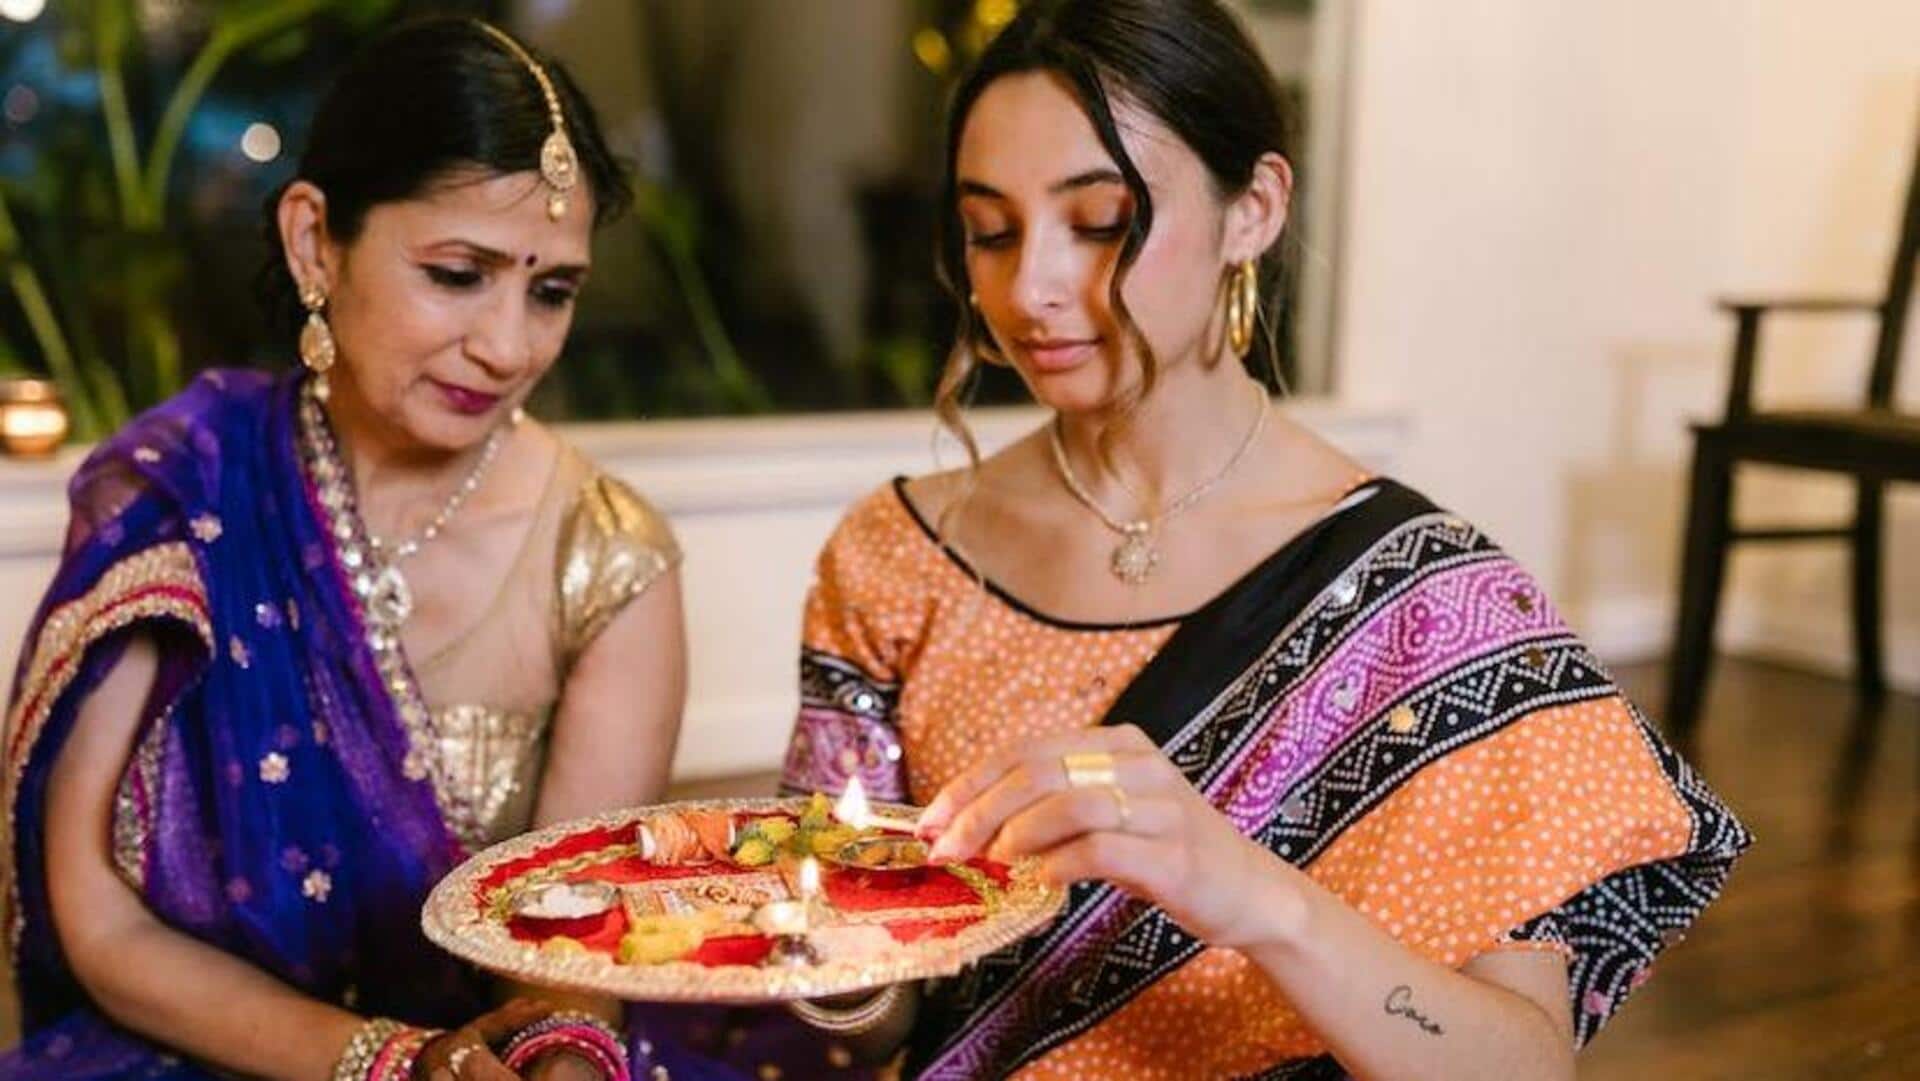 भारत के अलग-अलग हिस्सों में कैसे मनाया जाता है दिवाली का त्योहार? जानिए अनूठे तरीके